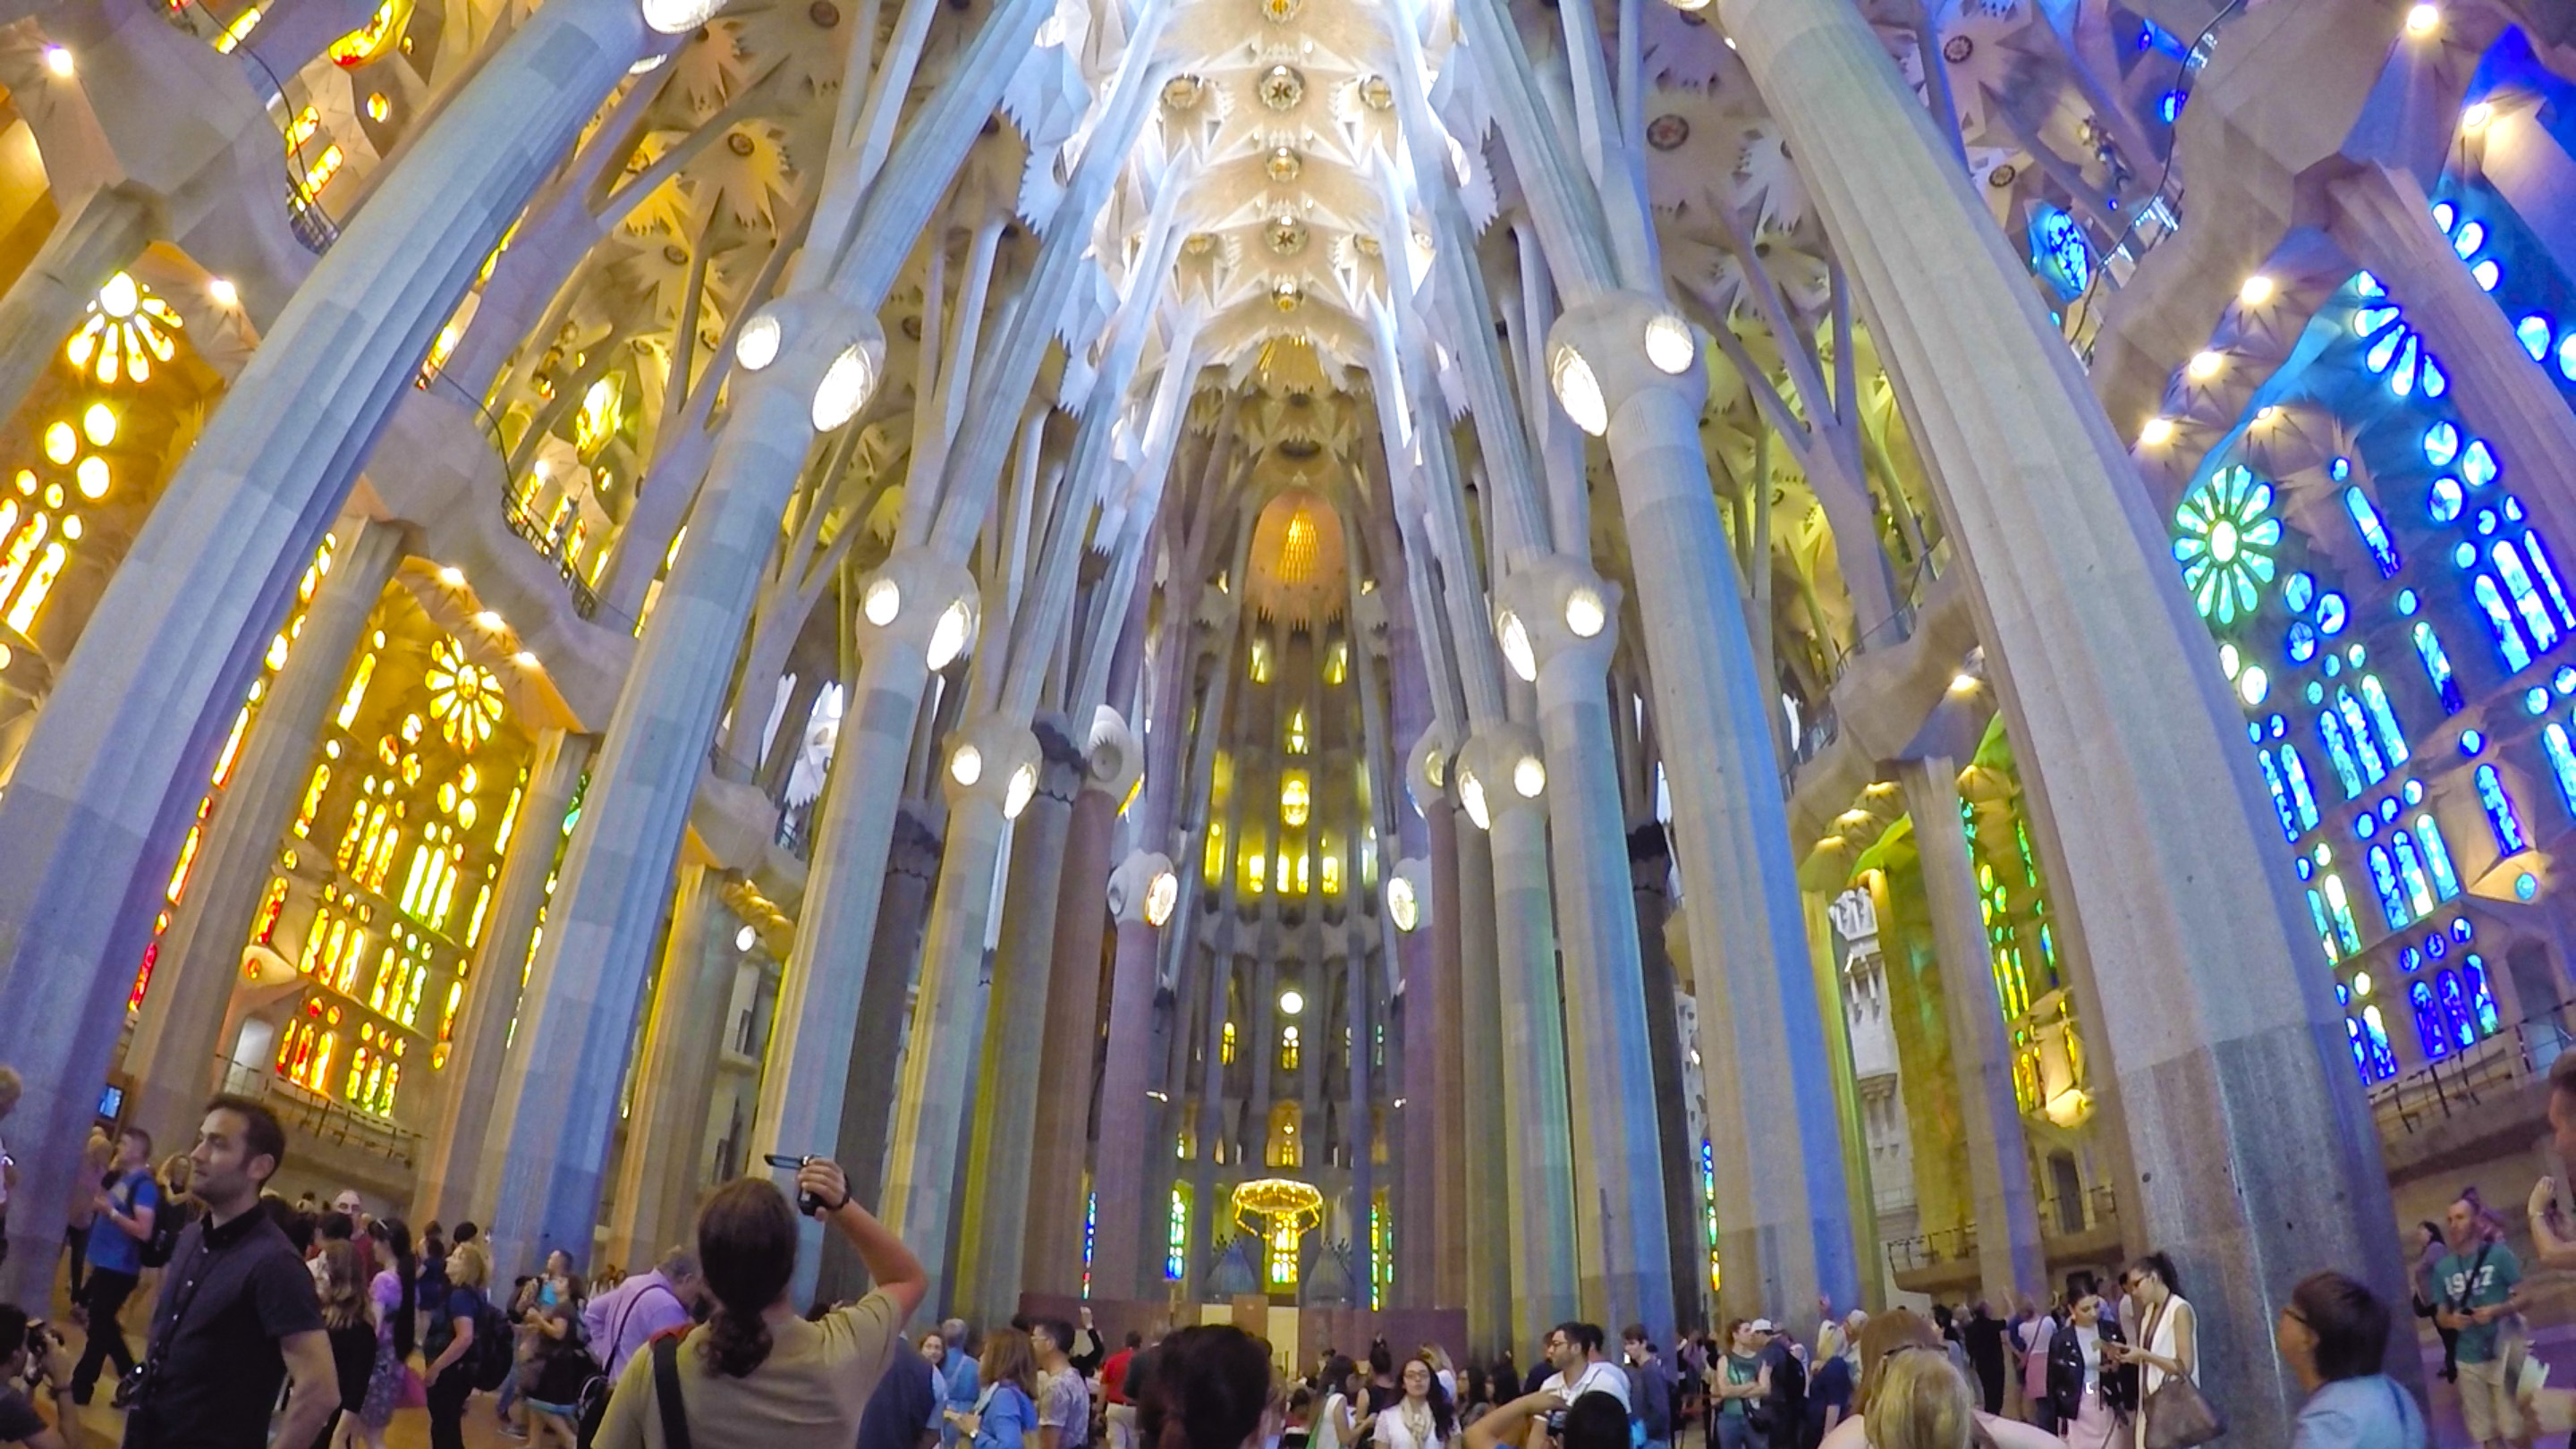 Overview and comparison of Sagrada Familia tickets